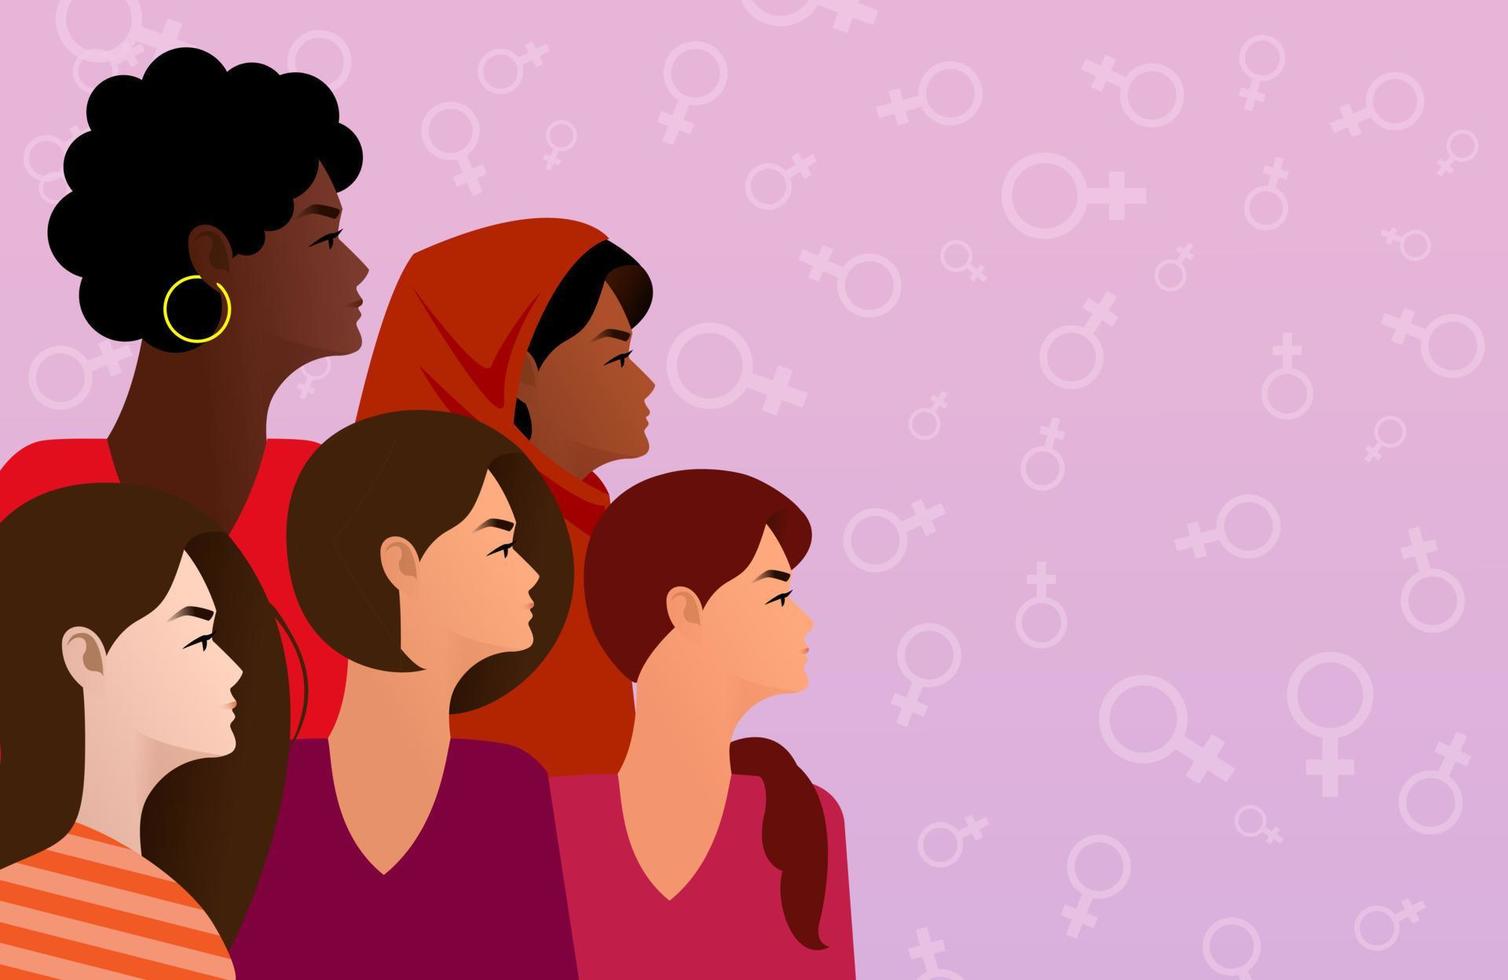 dia internacional da mulher. ilustração em vetor de cinco felizes sorrindo diversas mulheres juntos.